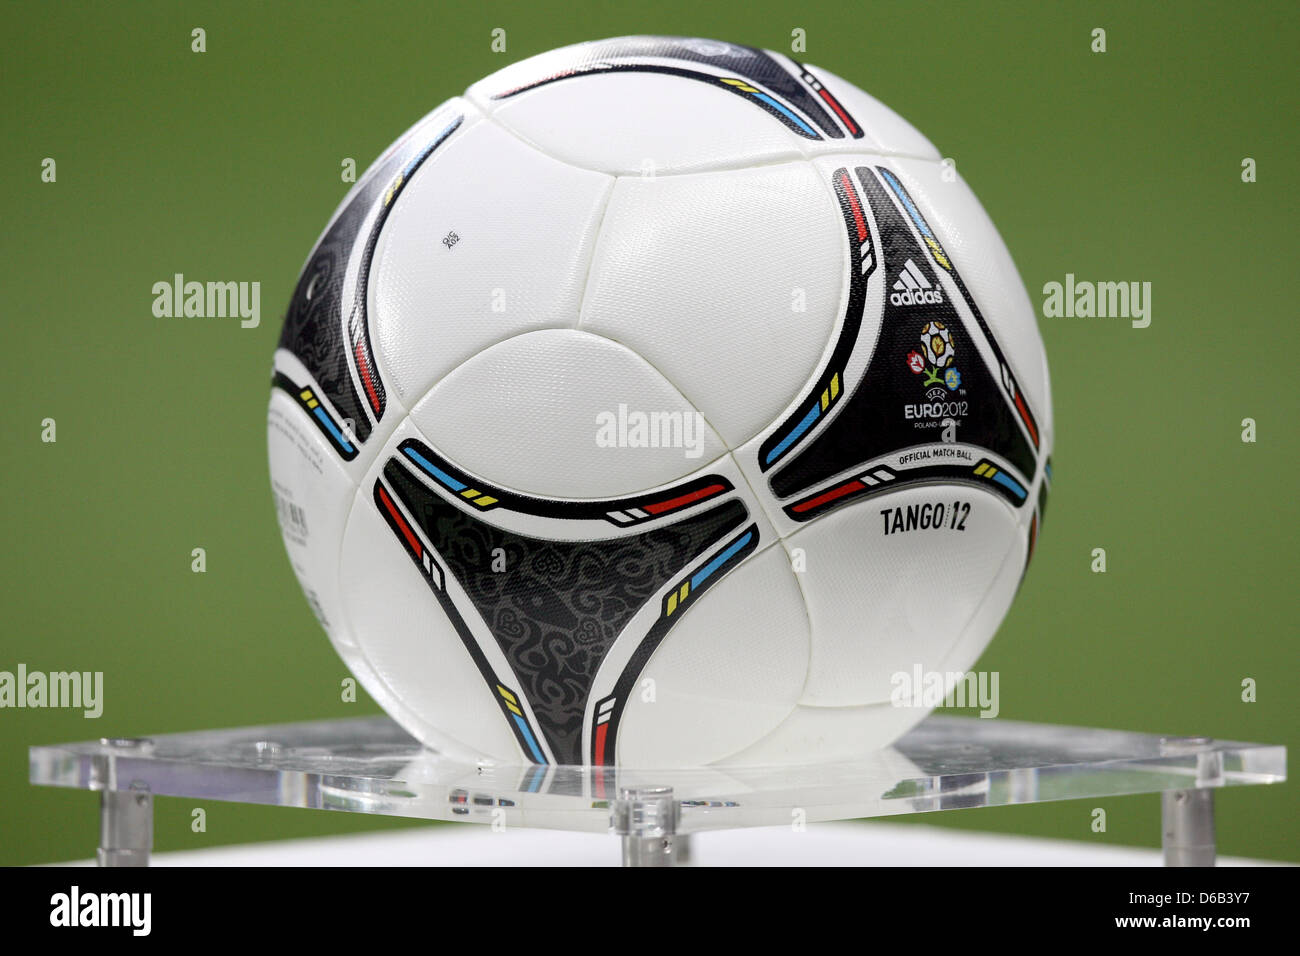 Le ballon de soccer 'Tango' 12 par adidas se trouve sur un piédestal devant  le match de football entre l'Allemagne et l'Argentine à la  Commerzbank-Arena à Francfort-sur-Main, Allemagne, 15 août 2012. Photo :